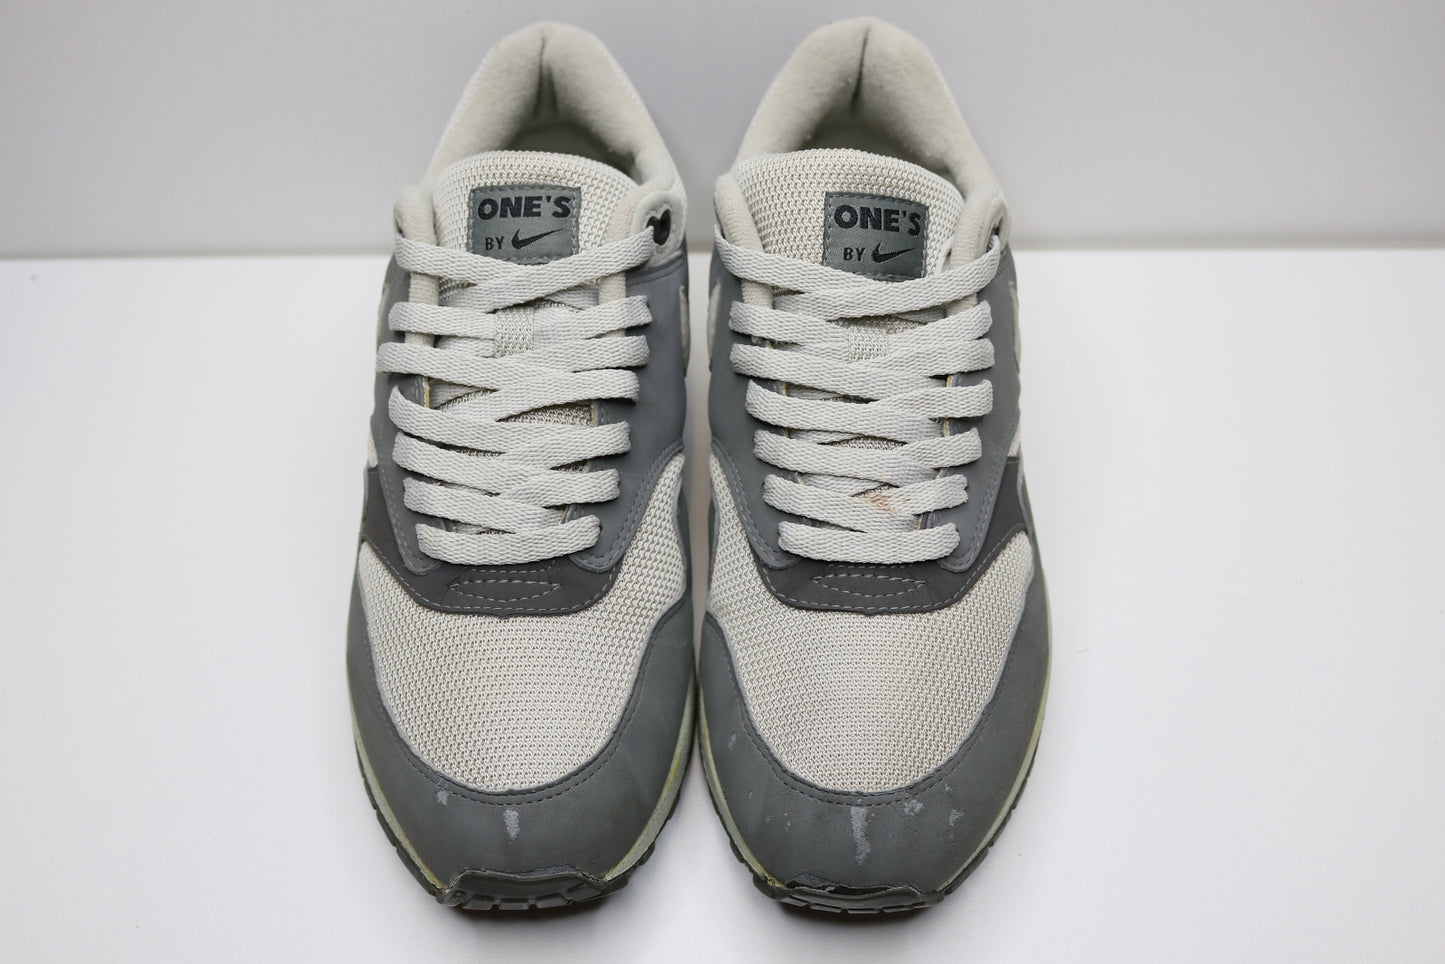 Nike Air Max One: One's grey EU : 43 Rare Pair